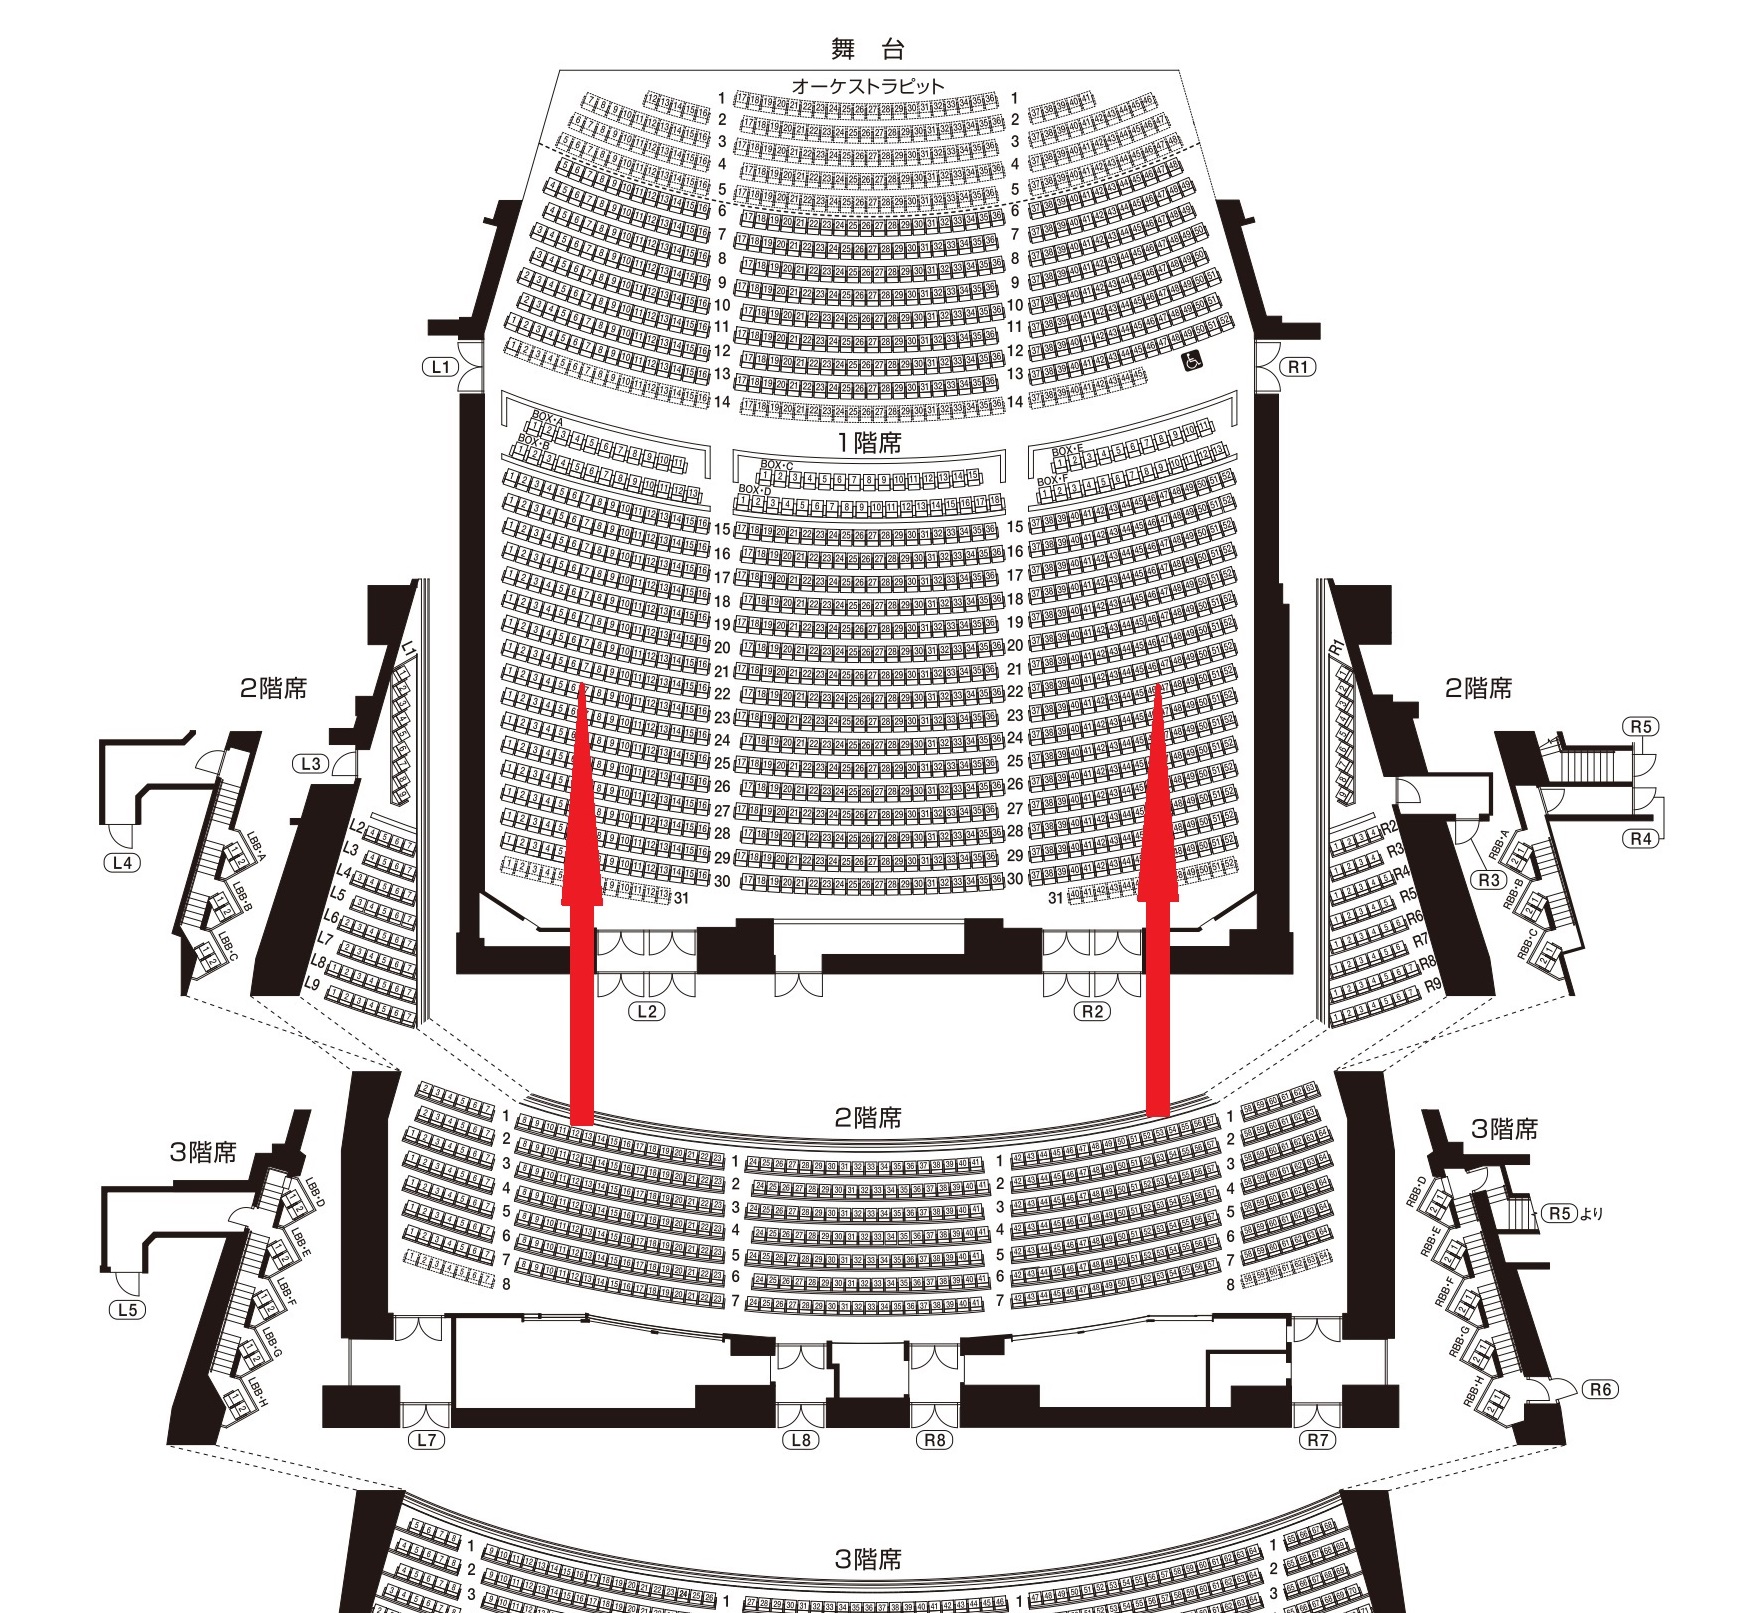 フェスティバルホールの座席からの見え方は 1階席について徹底解説 座席ウォッチャー